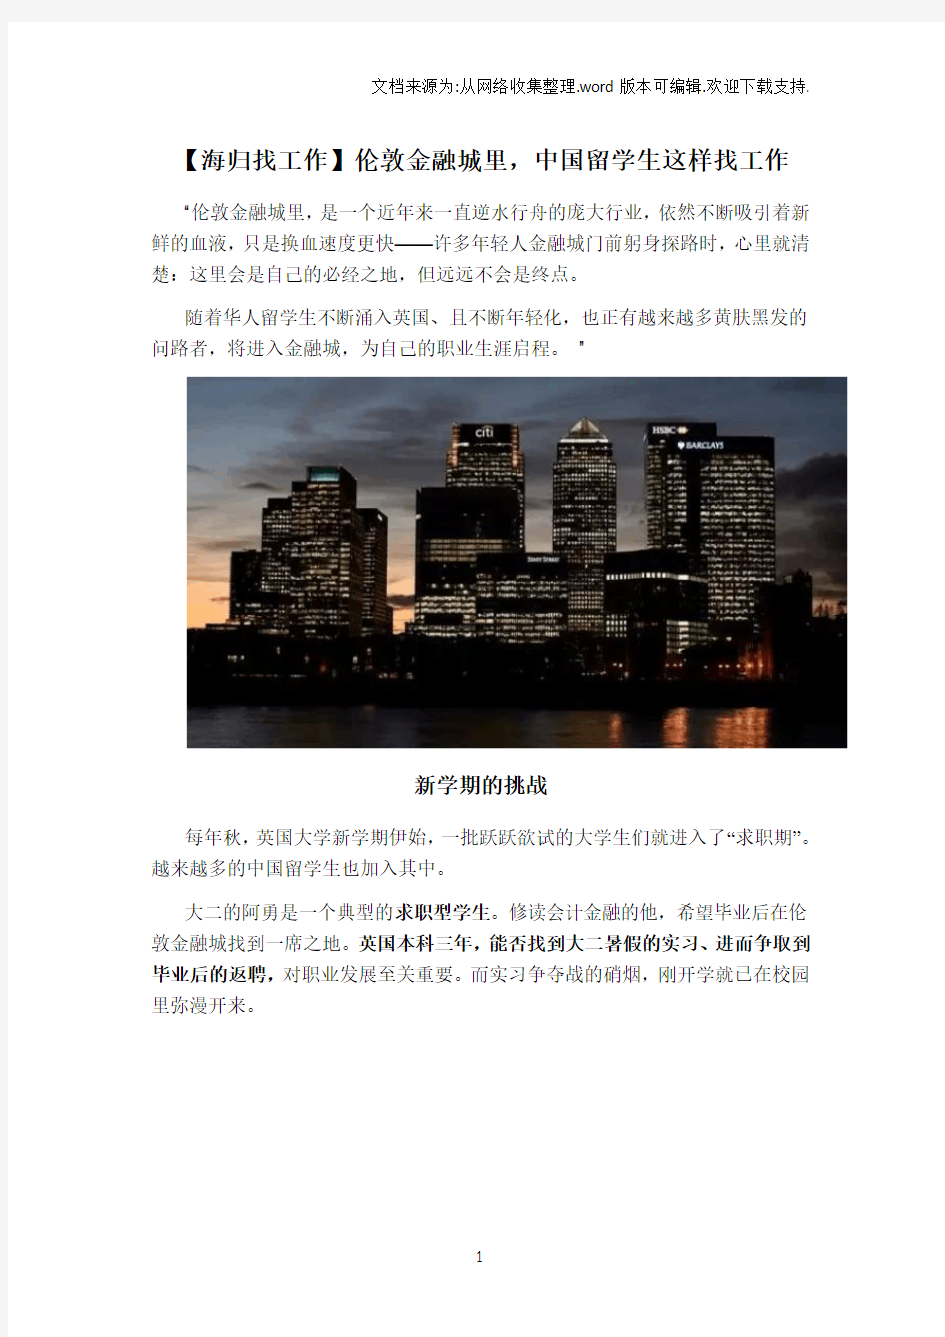 【海归找工作】伦敦金融城里,中国留学生这样找工作